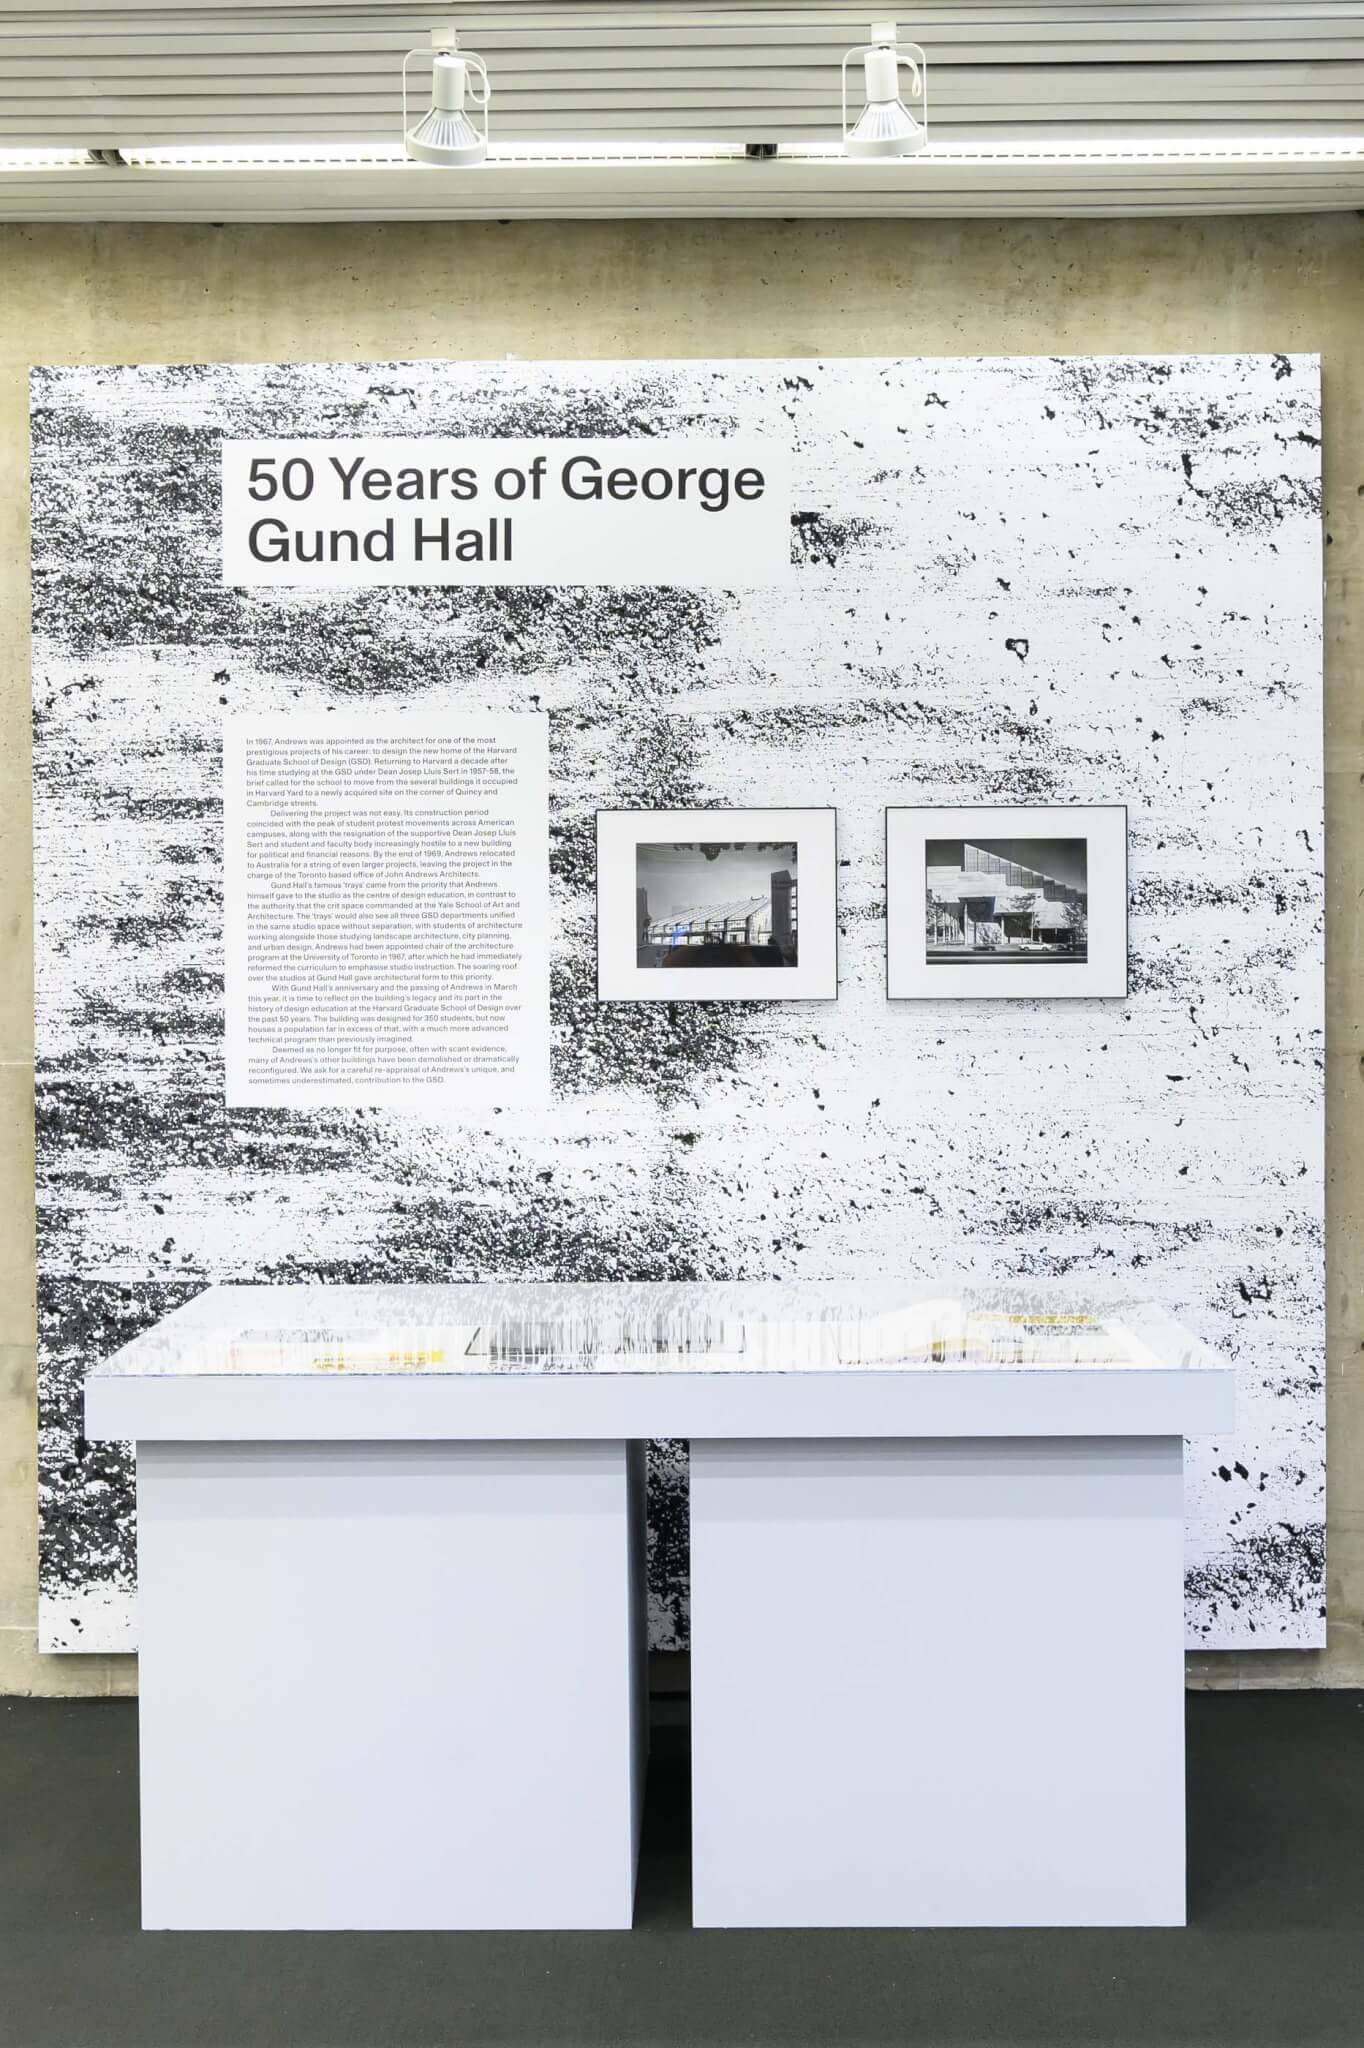 history of gund hall